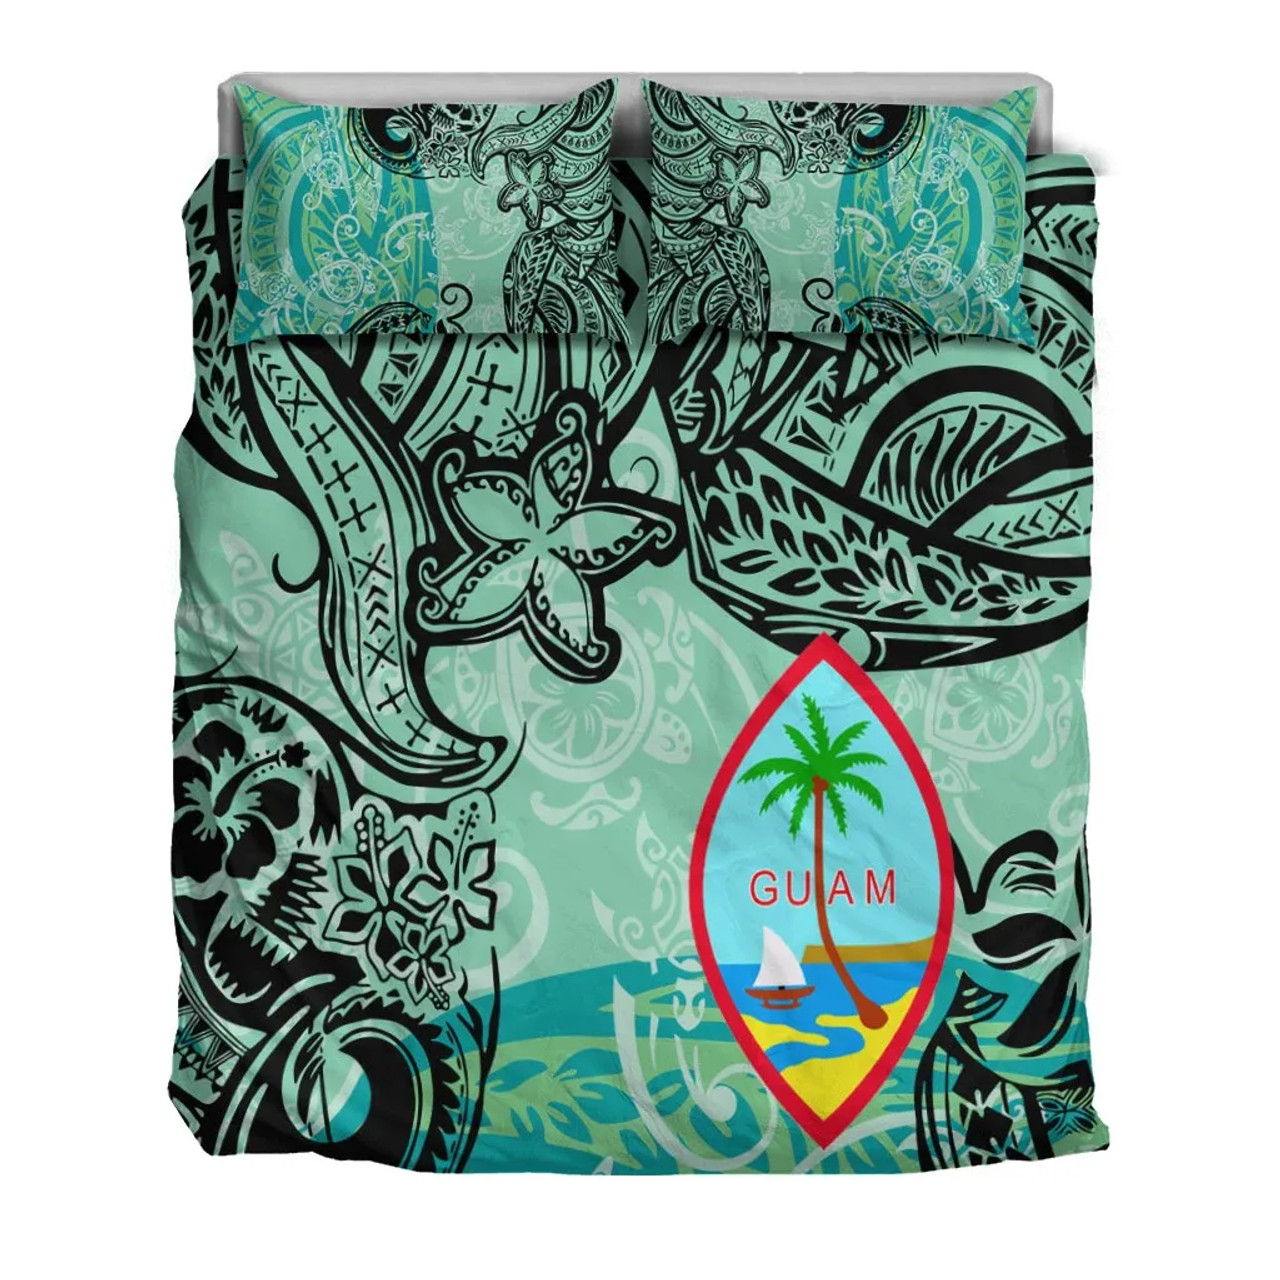 Guam Bedding Set - Vintage Floral Pattern Green Color 3